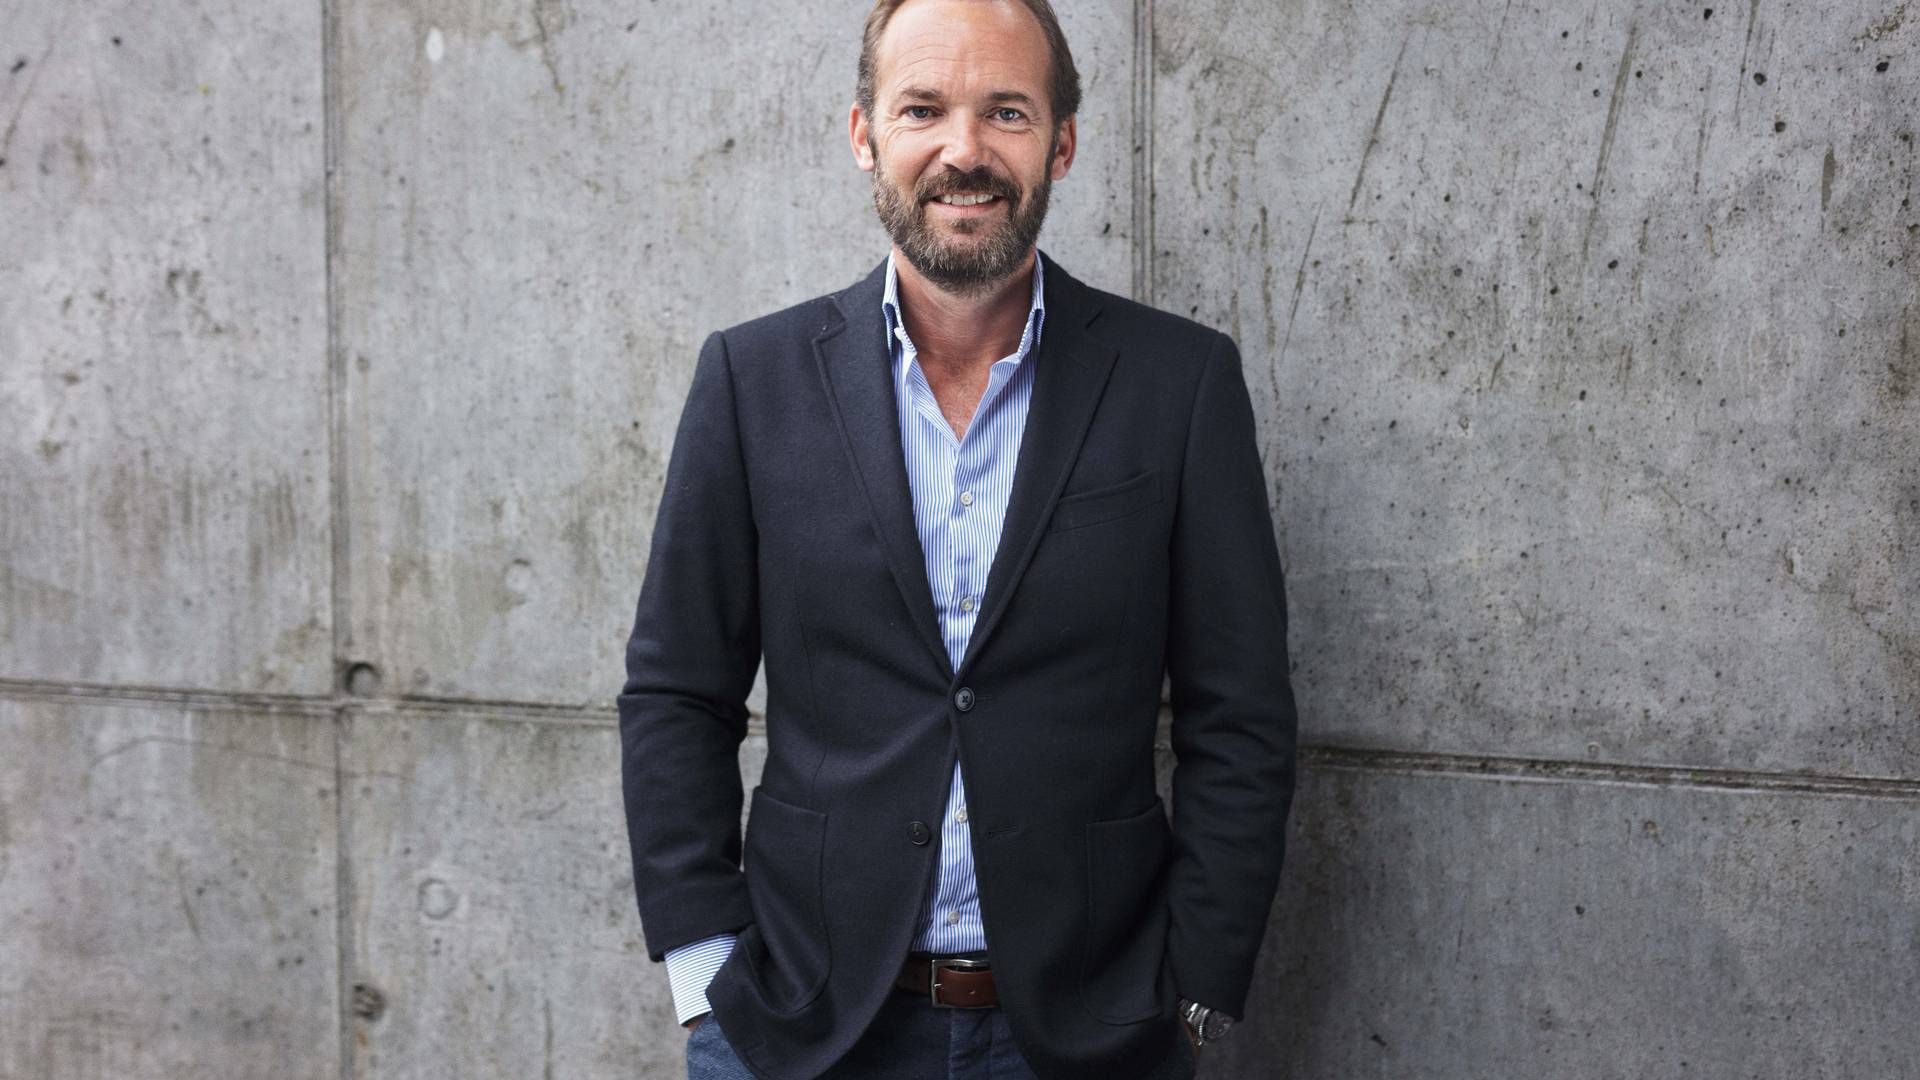 Stryhns-direktør Kristian Kornerup satser efter overtagelsen af Delitaste meget på stærk vækst i sin foodserviceforretning med salg til restauranter, kantiner, institutioner osv. | Foto: Pr / Stryhns.